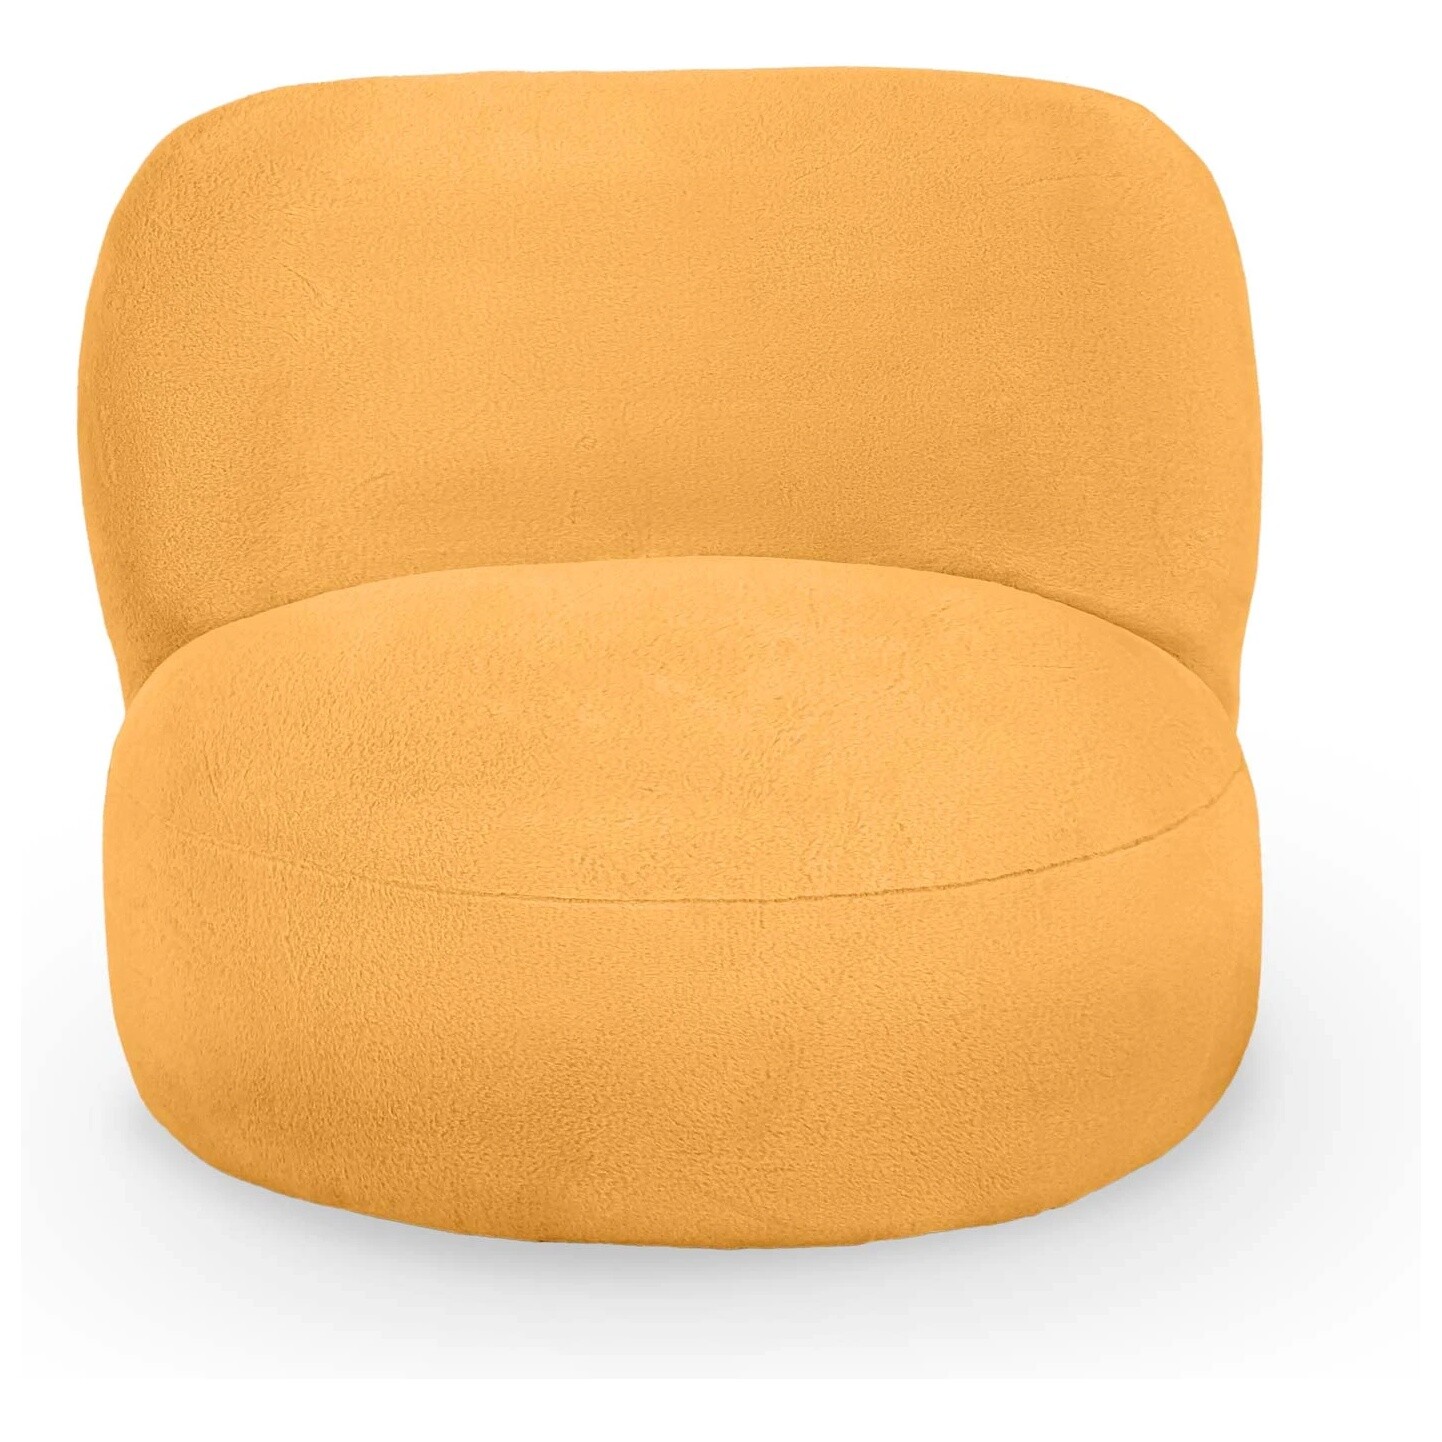 Кресло мягкое круглое без ножек искусственный мех оранжевое Patti 59